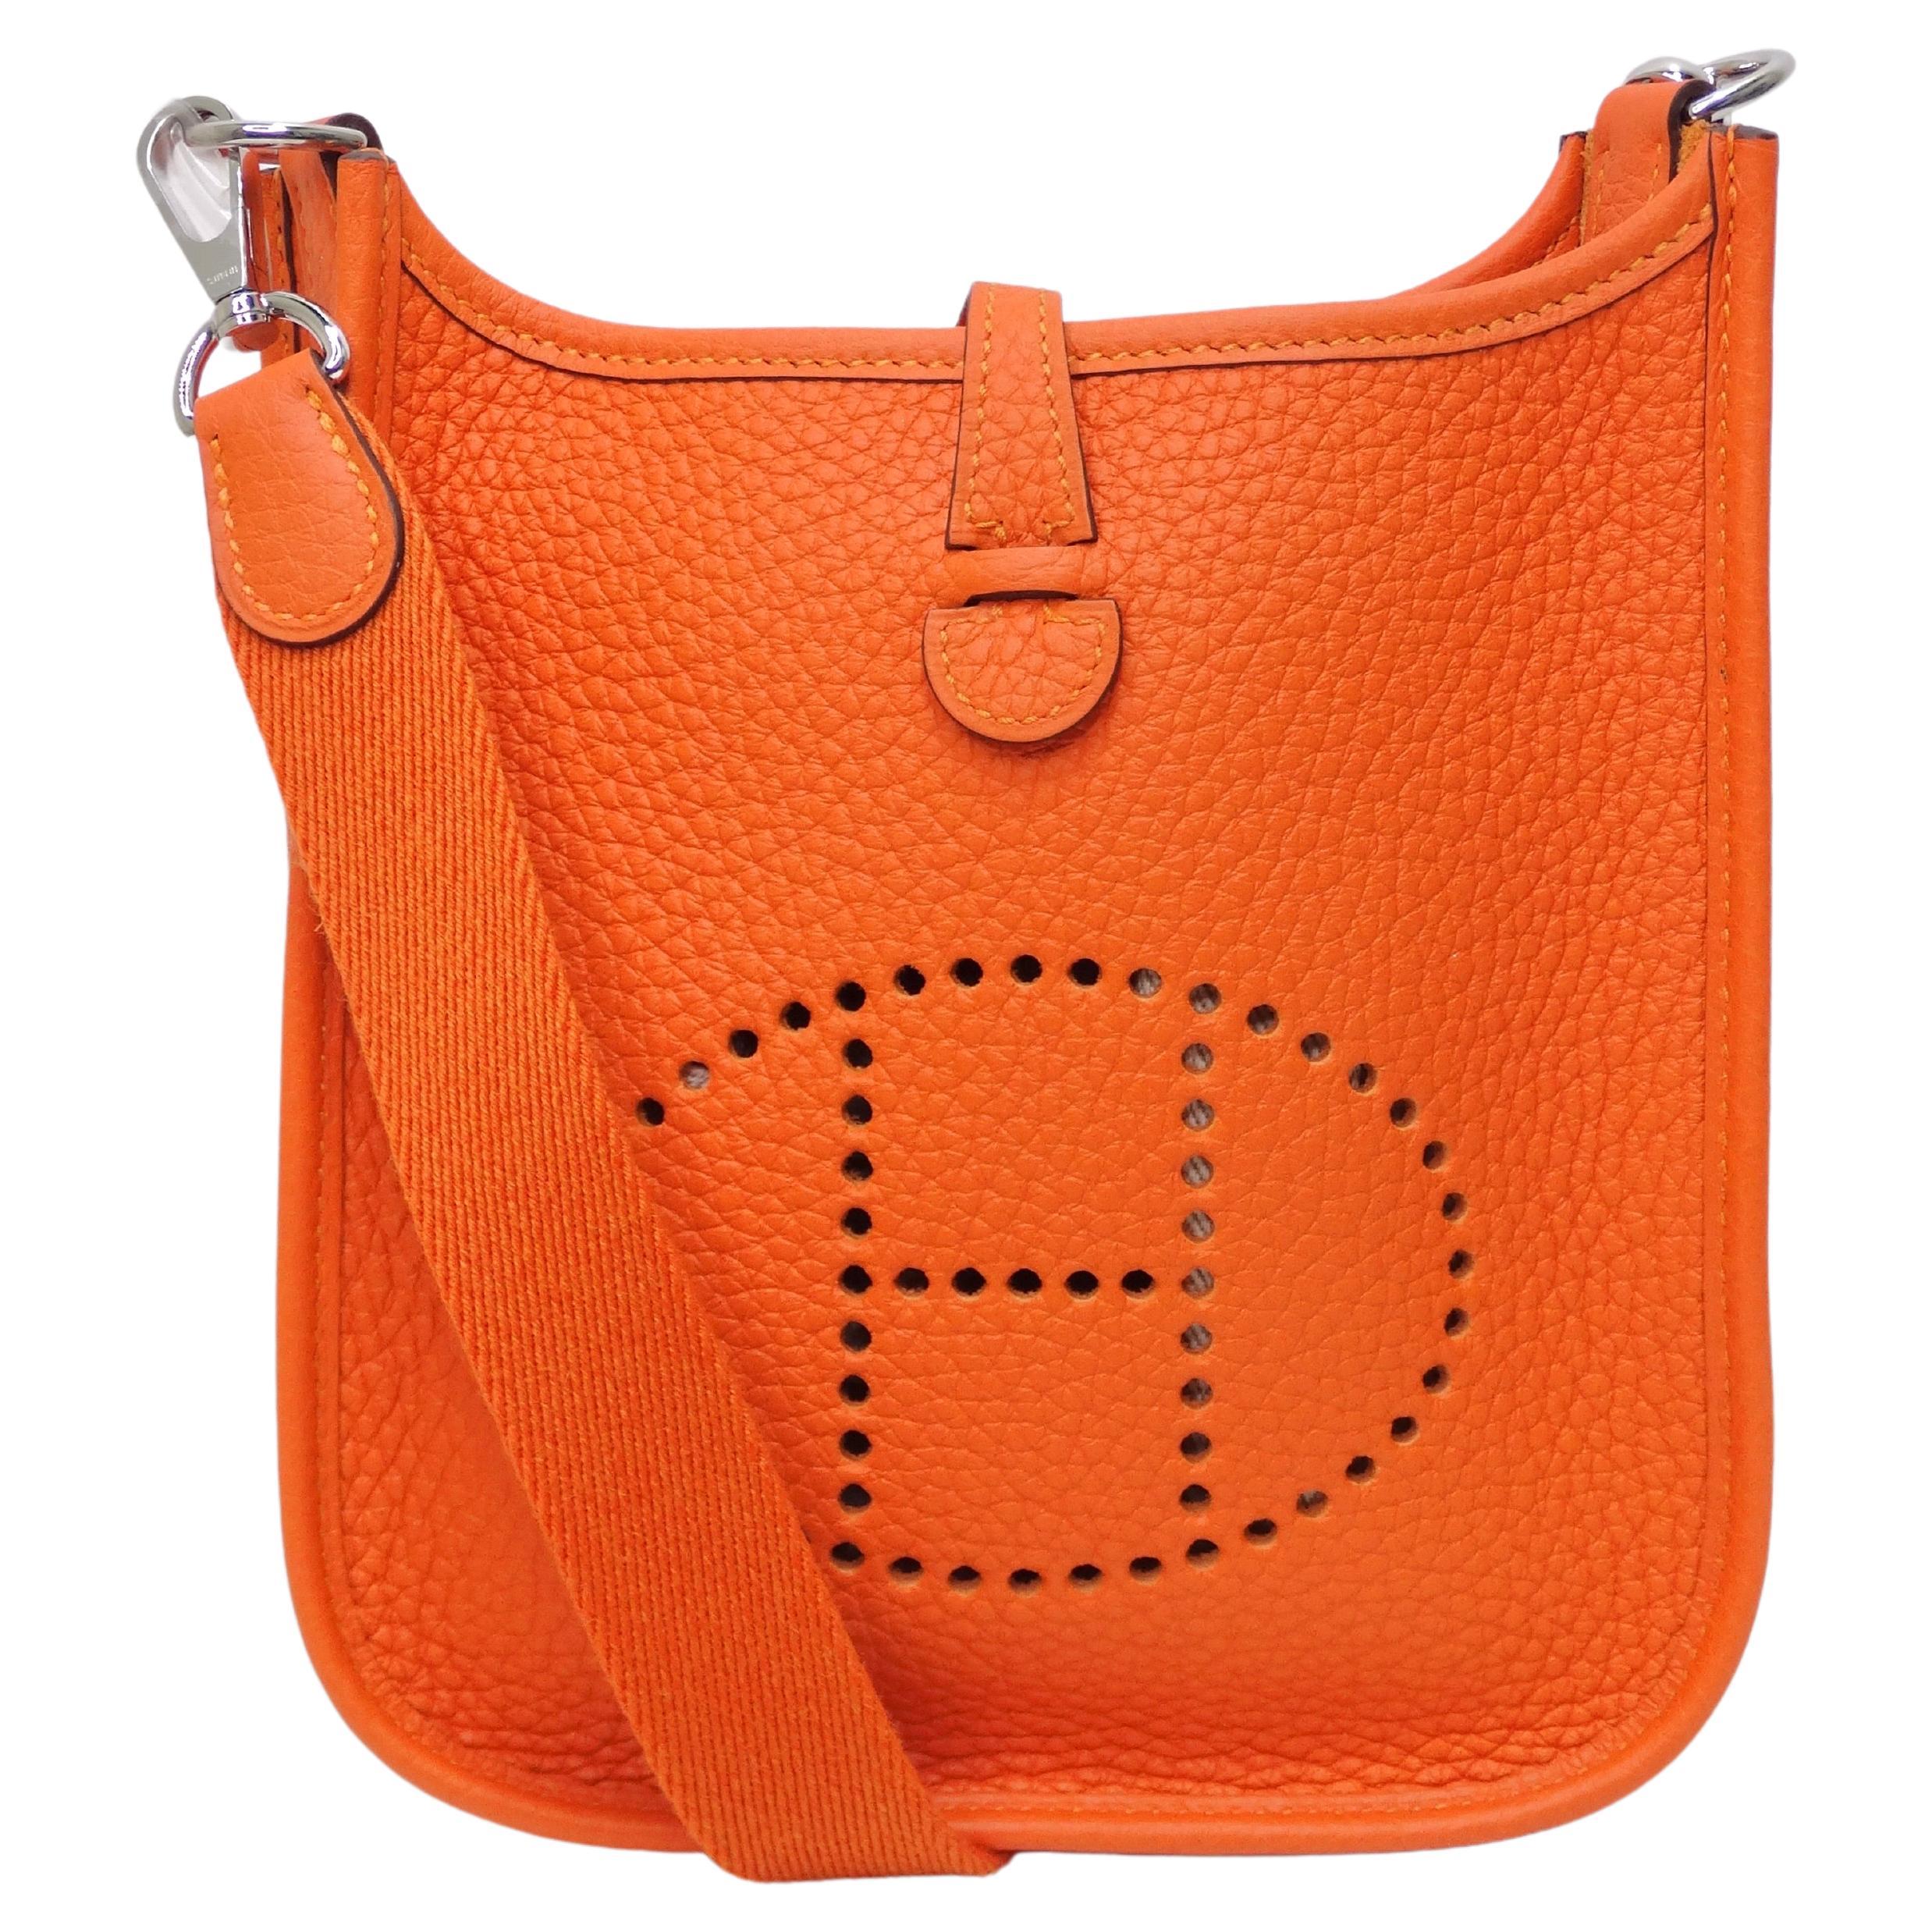 Hermes Bag Names 2022 - 5 For Sale on 1stDibs